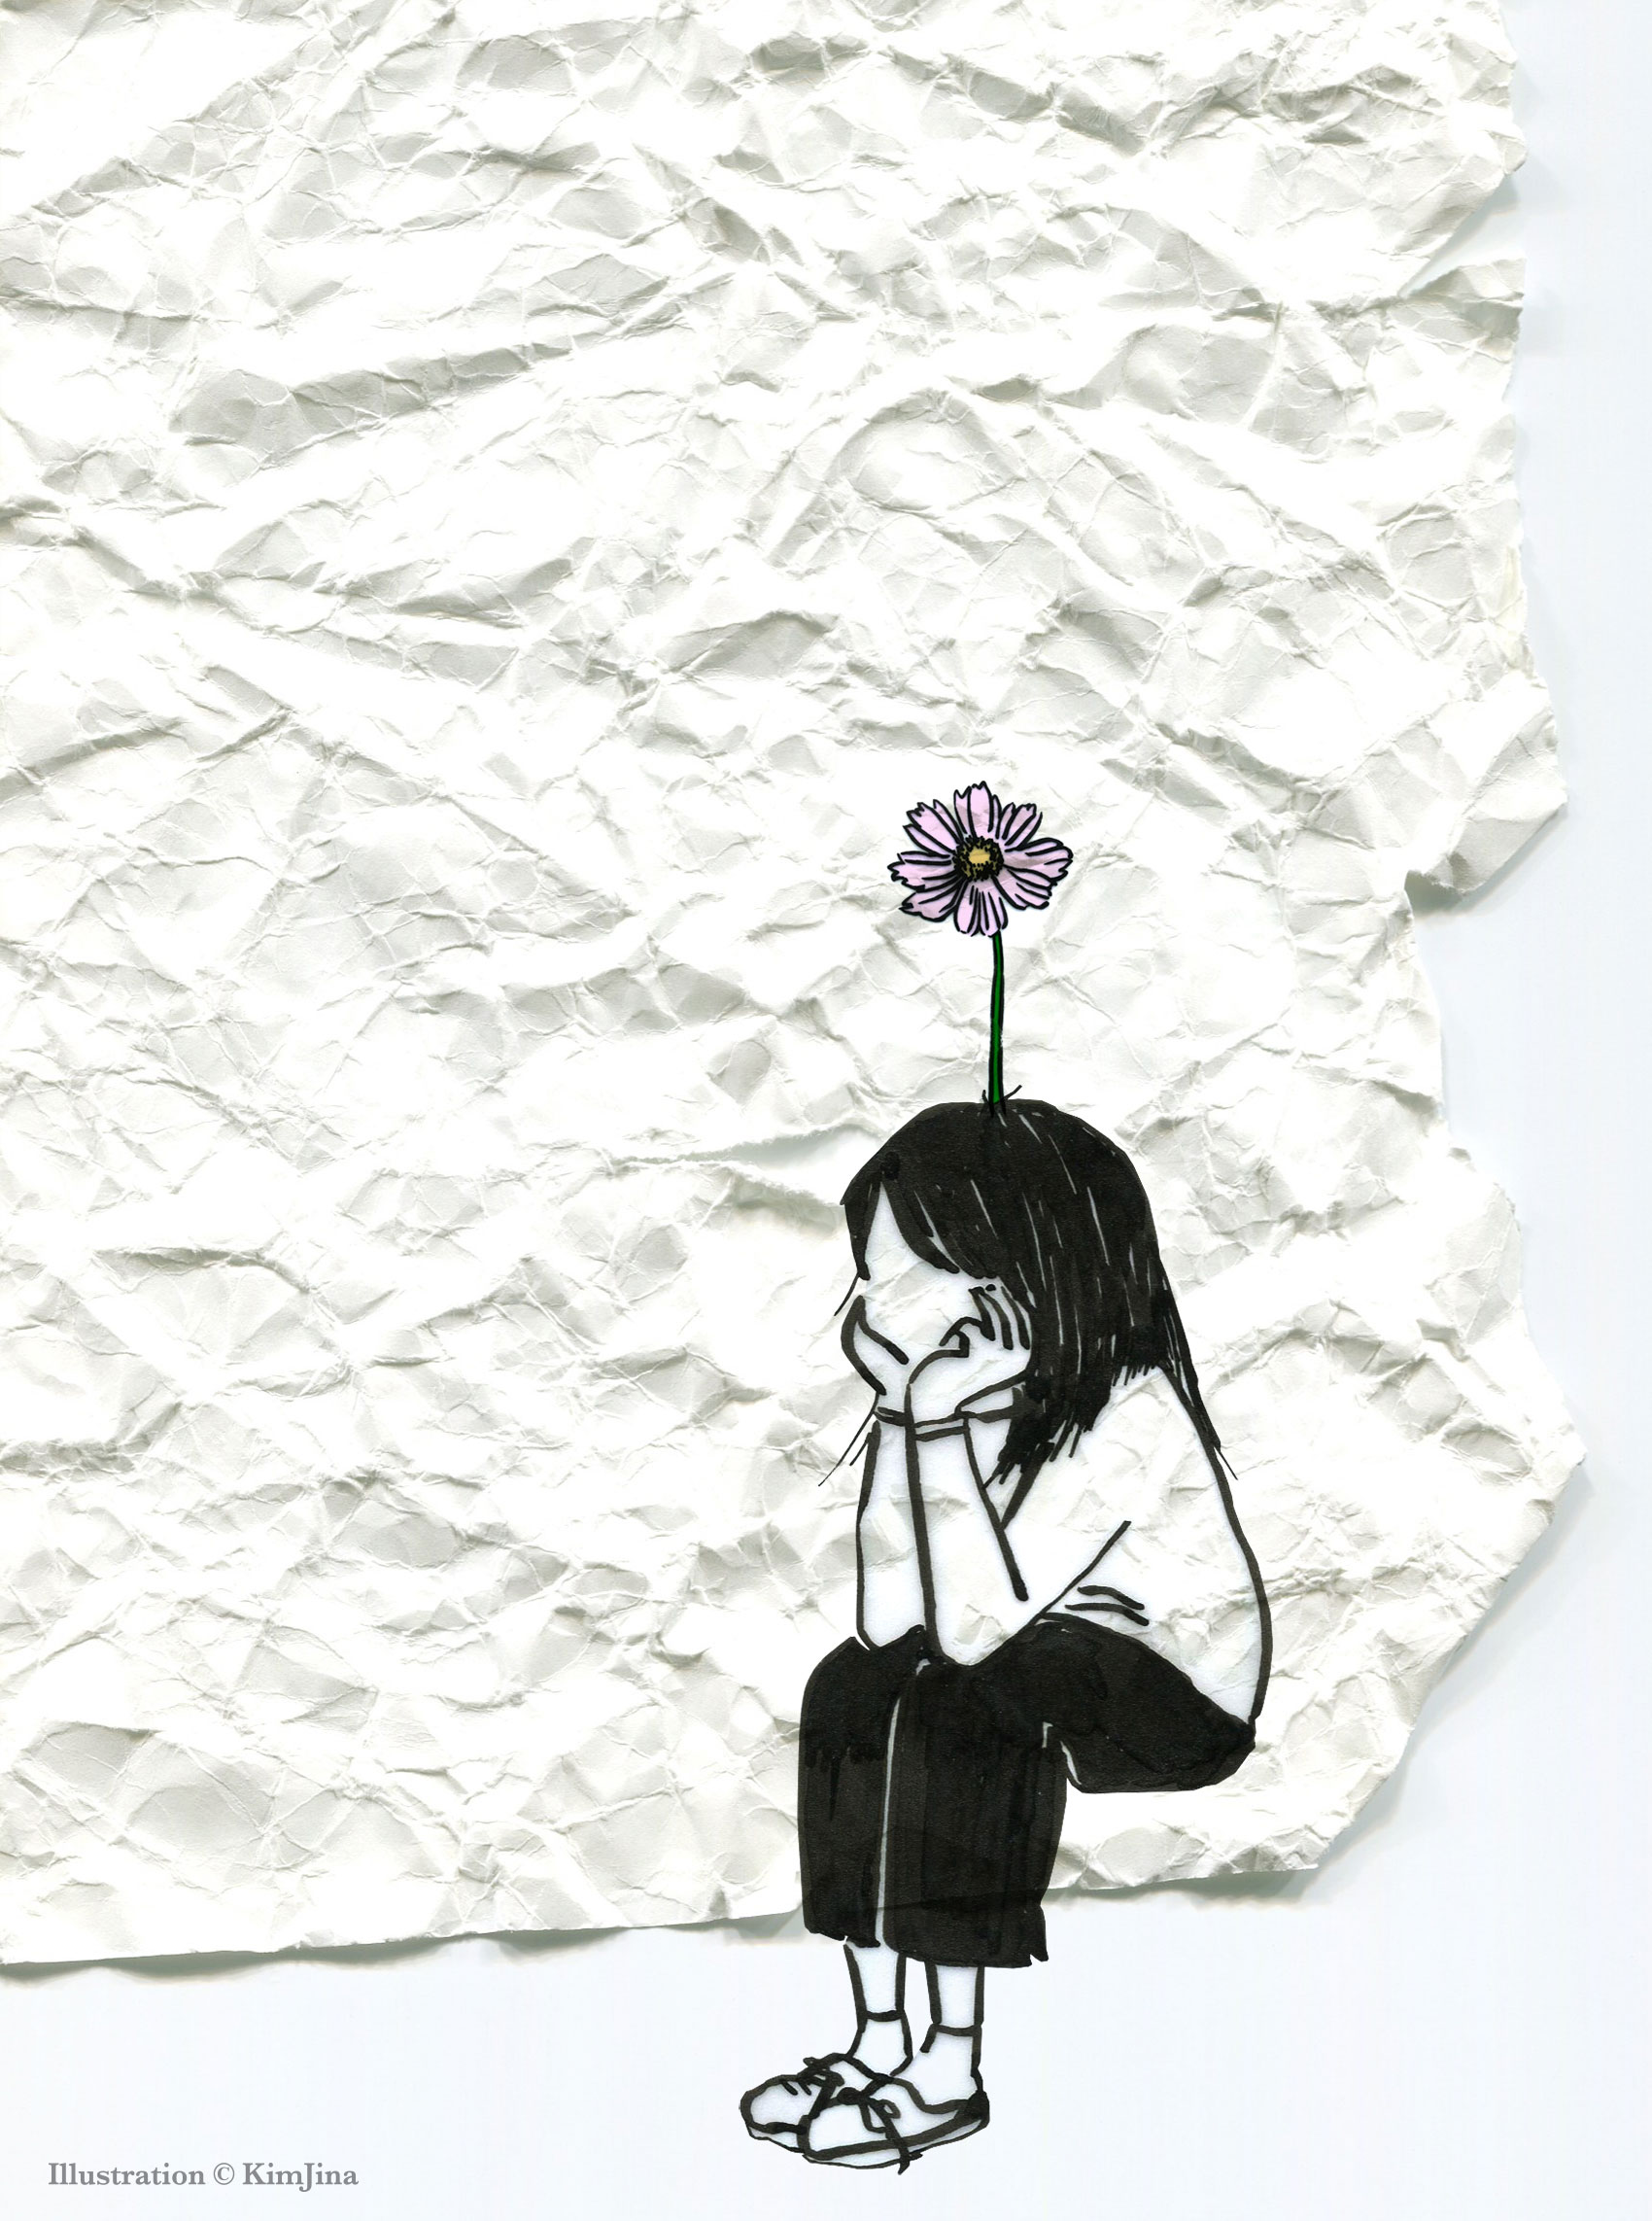 　어디로 옮겨 심어야 할까 소녀는 구겨진 종이같은 일상 위에 있지만, 꽃같은 희망을 버리지 않았다. 